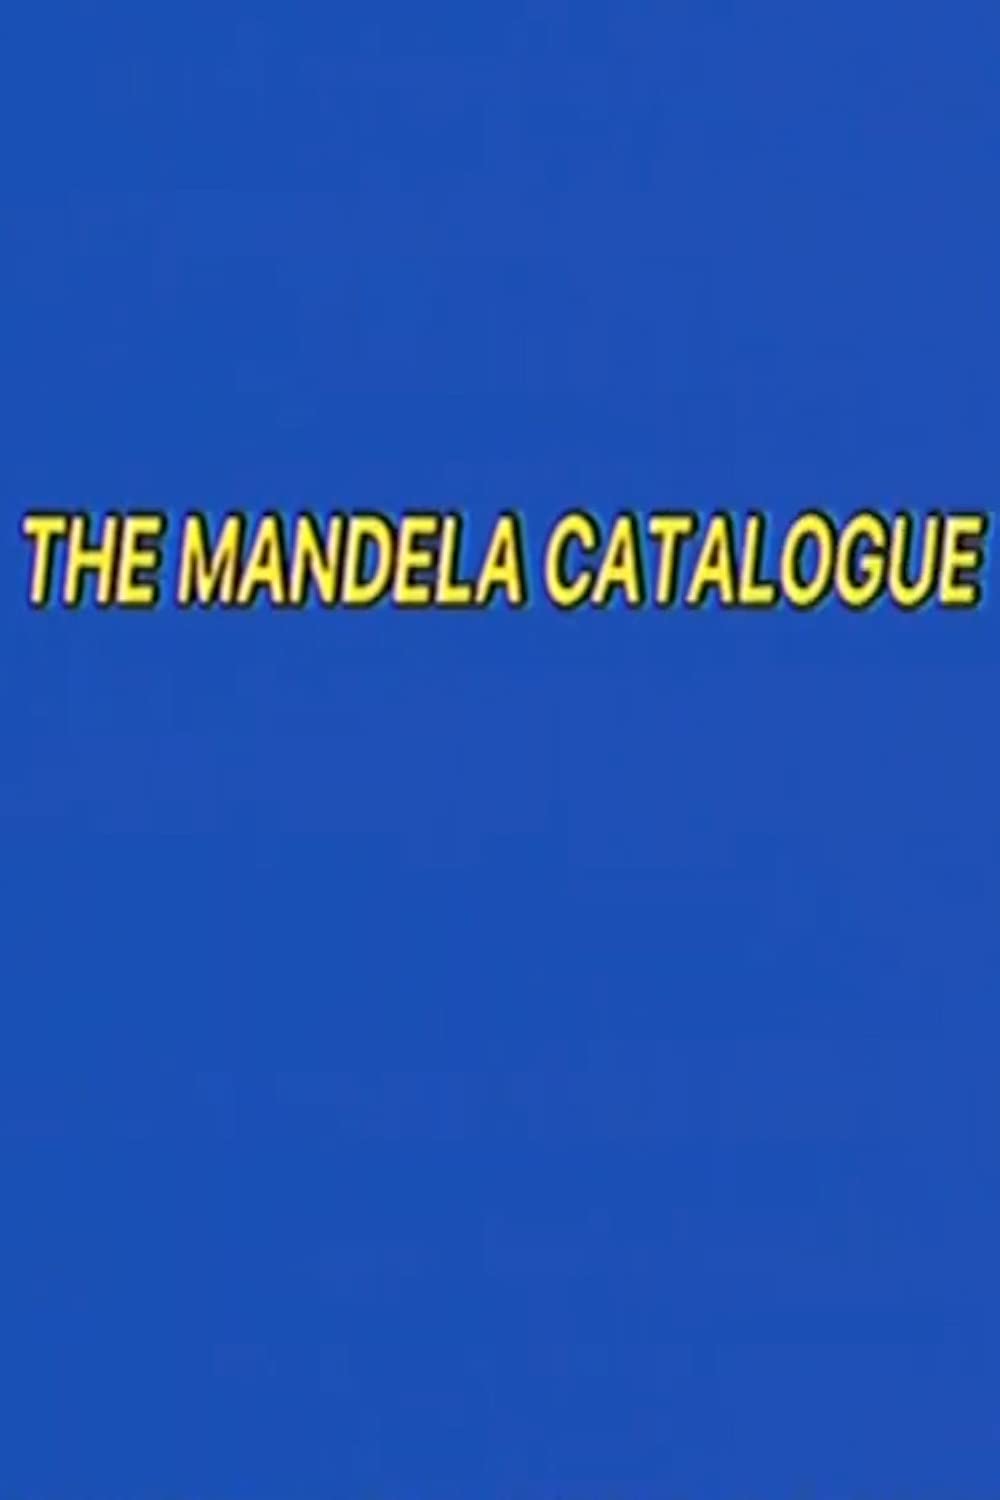 The Mandela Catalogue (TV Series 2021– )